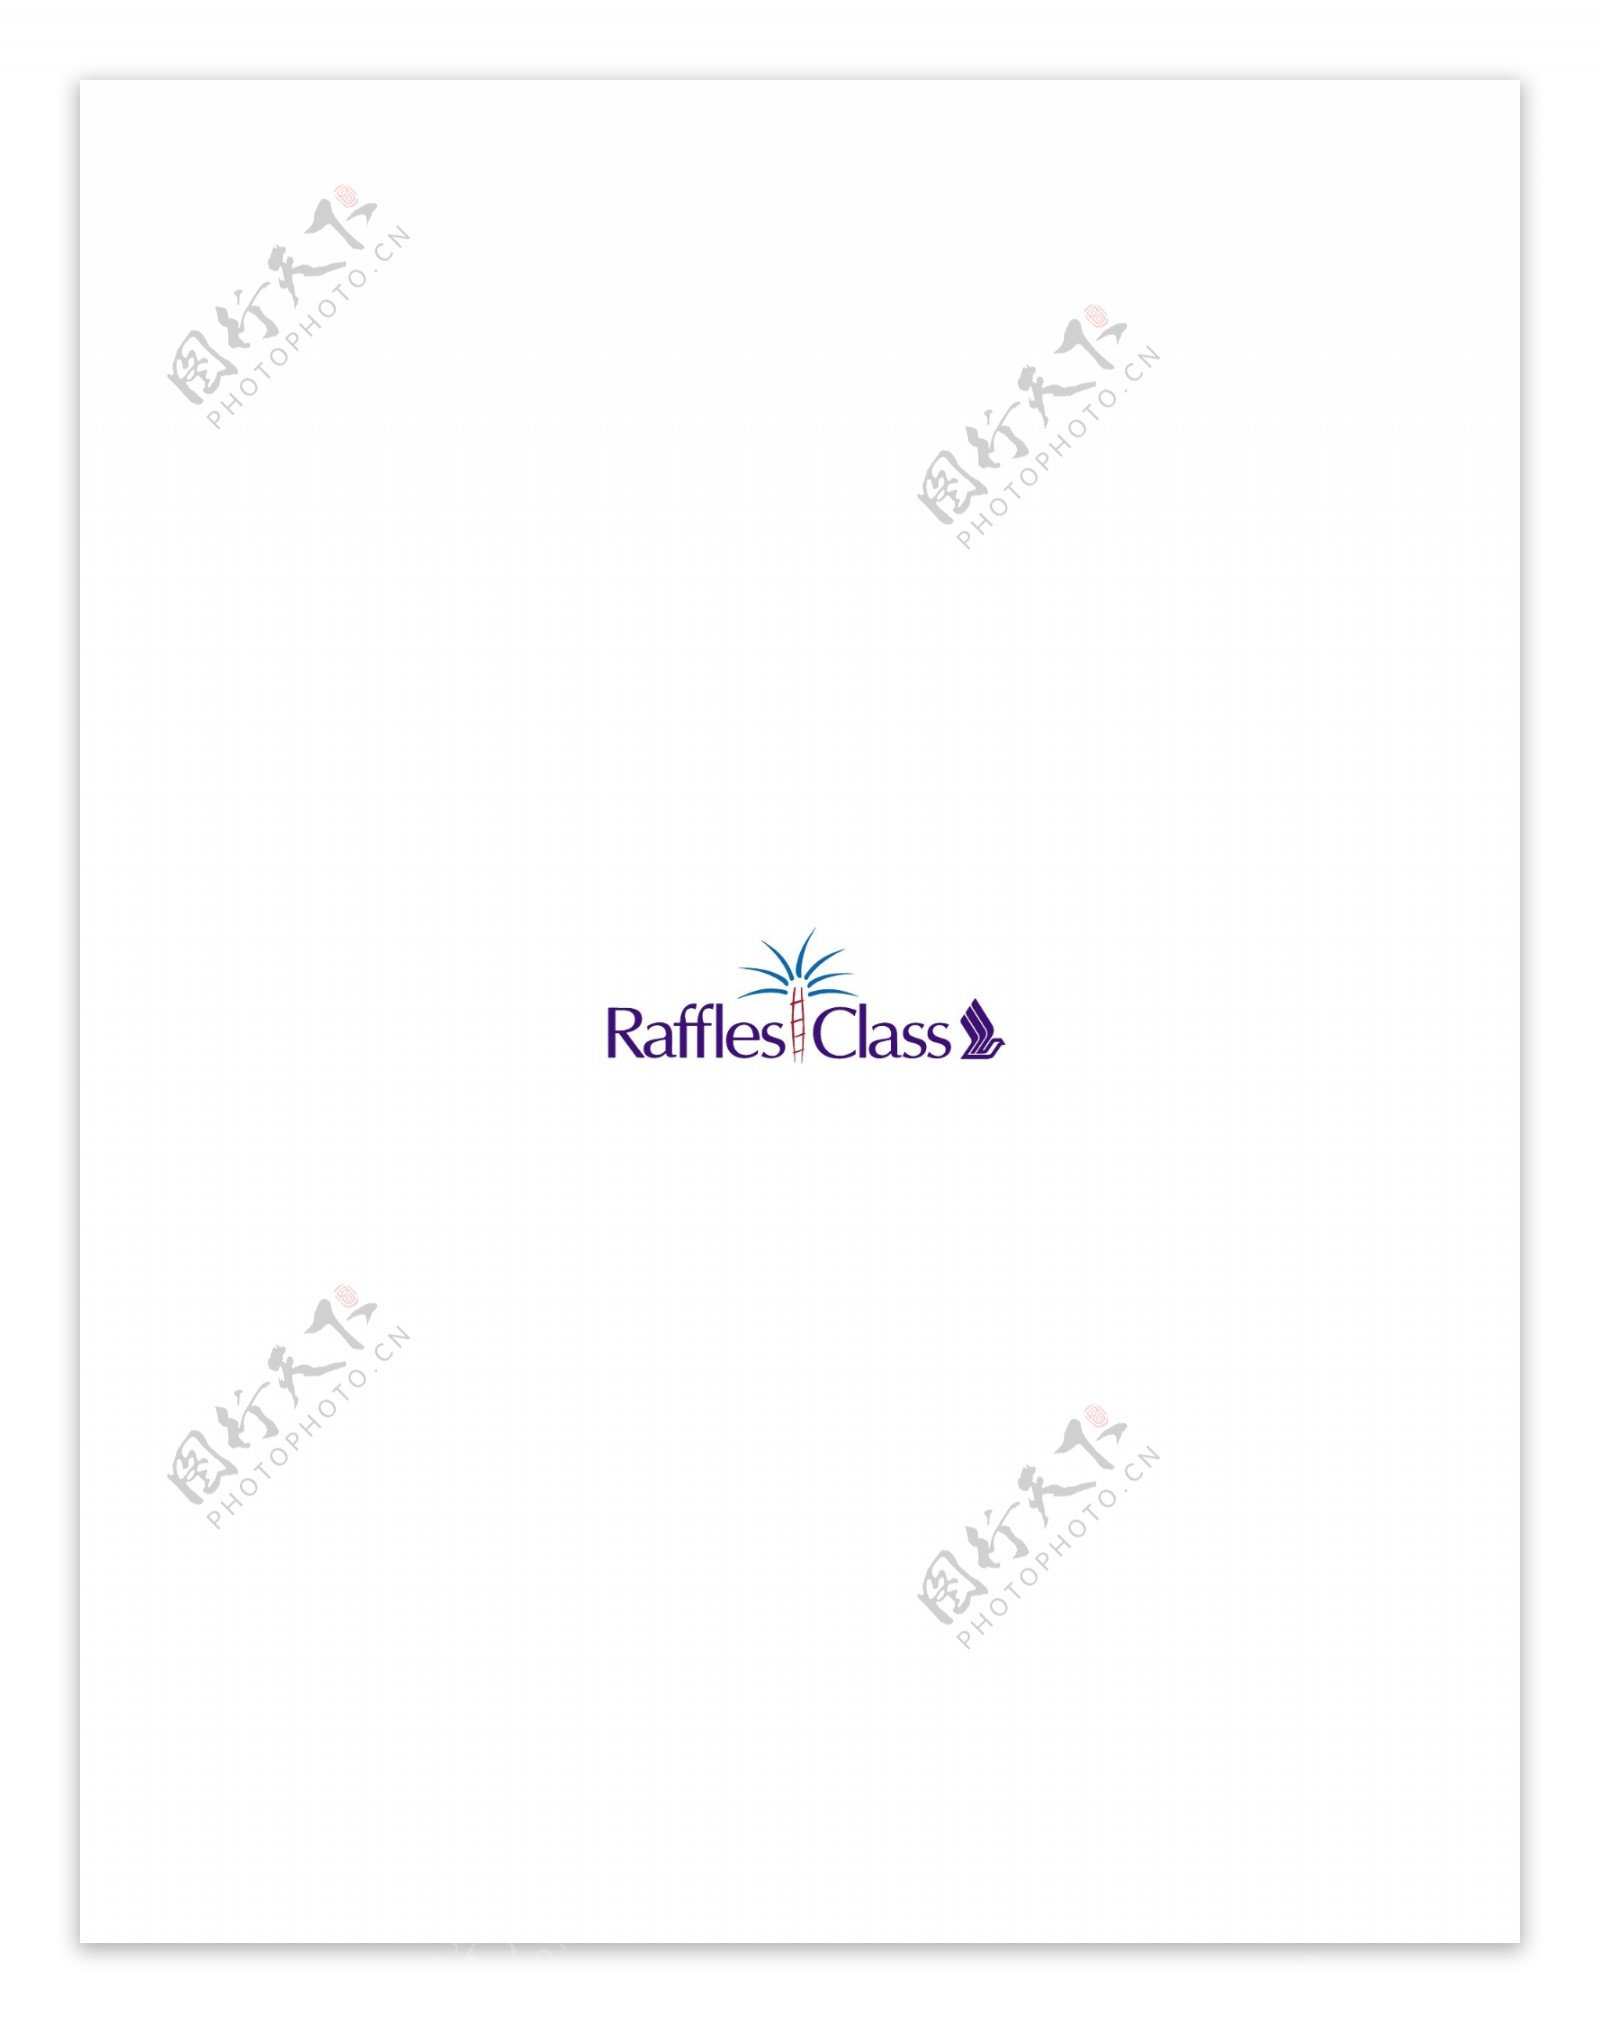 RafflesClasslogo设计欣赏RafflesClass民航业LOGO下载标志设计欣赏